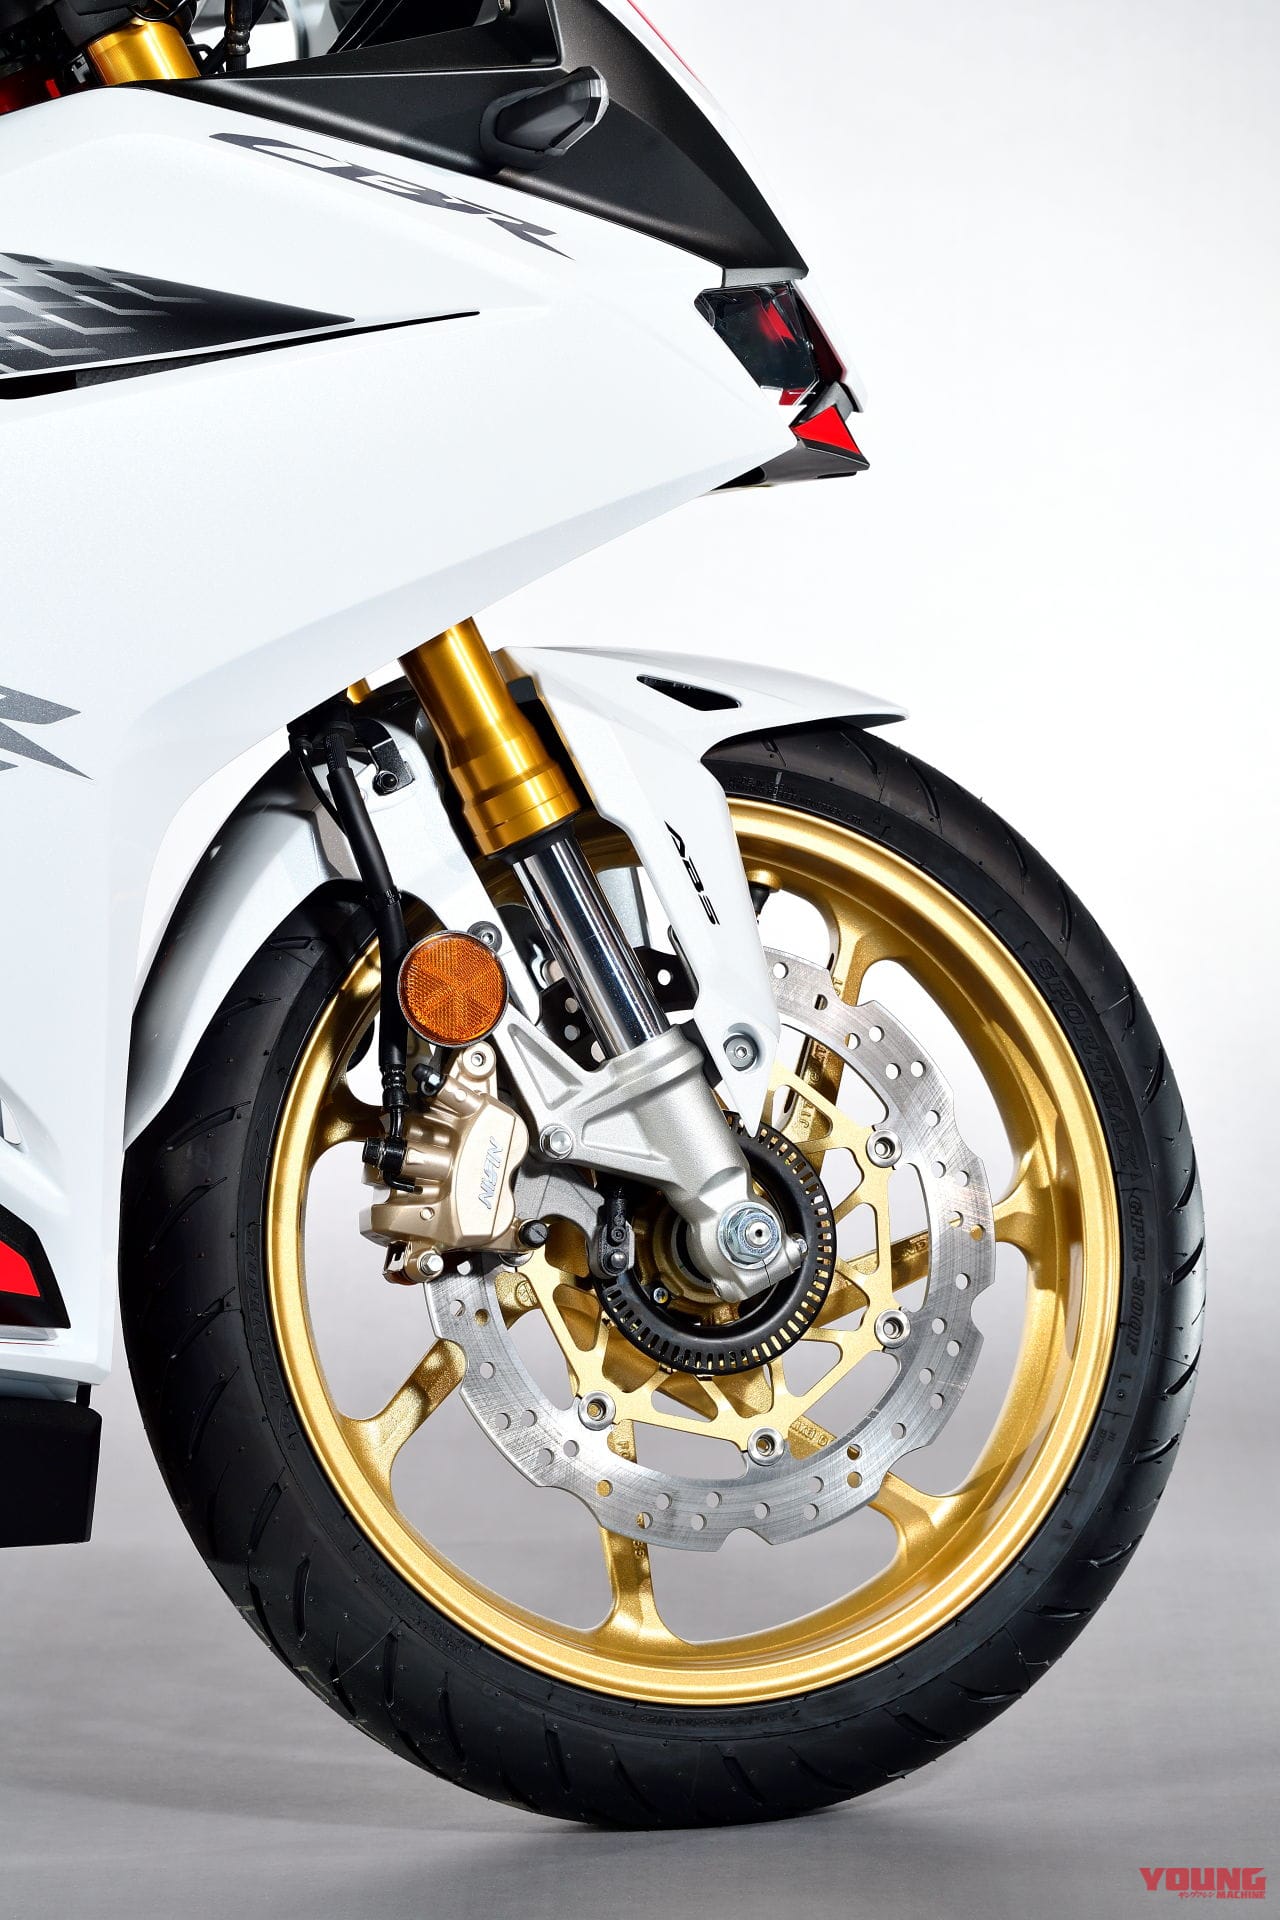 2020 Honda CBR250RR Details and Price Revealed - closeup